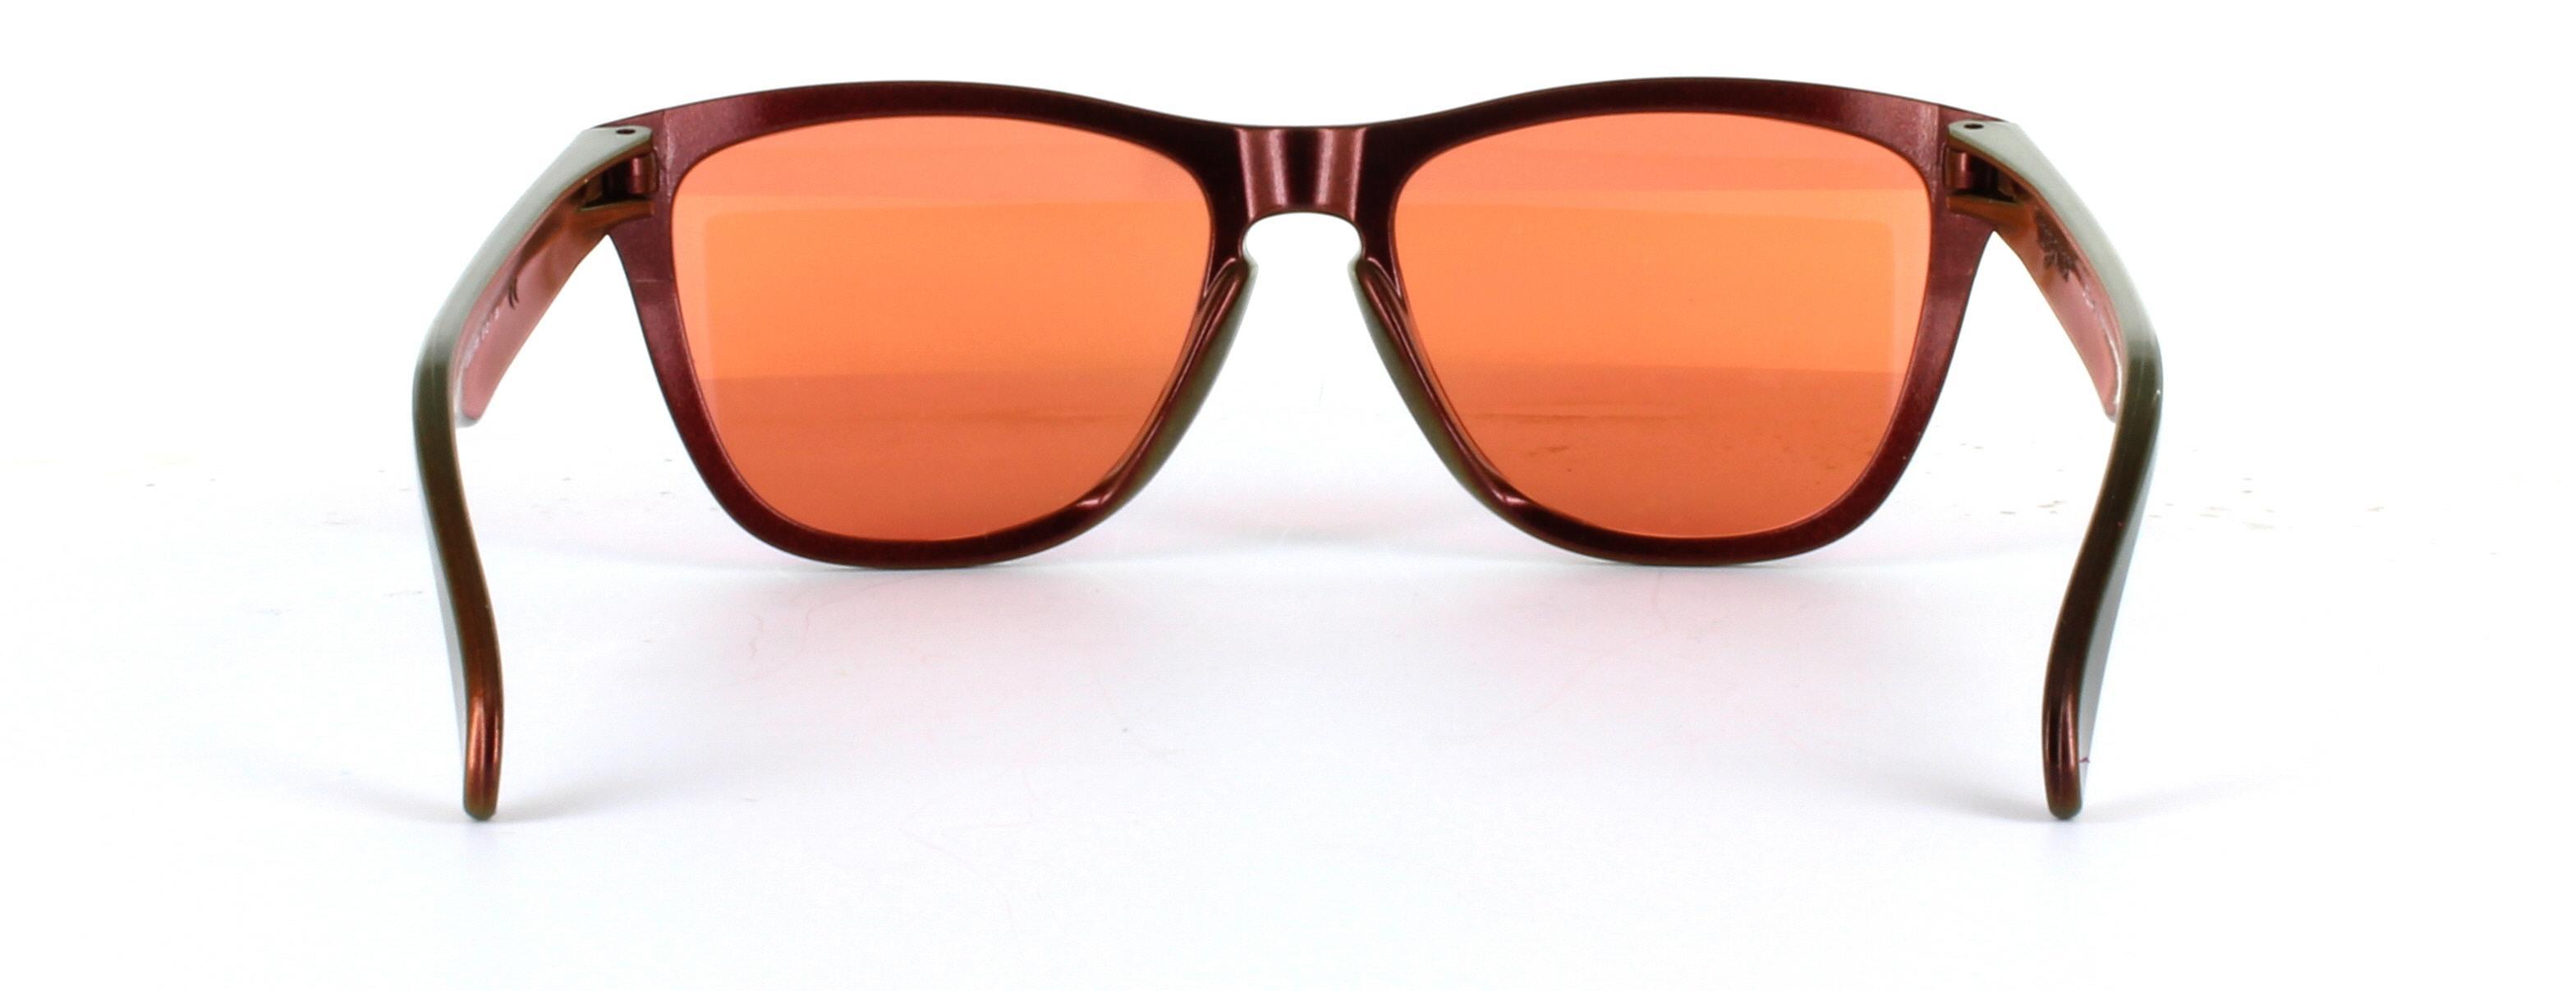 Oakley (O9013) Copper Full Rim Plastic Prescription Sunglasses - Image View 3